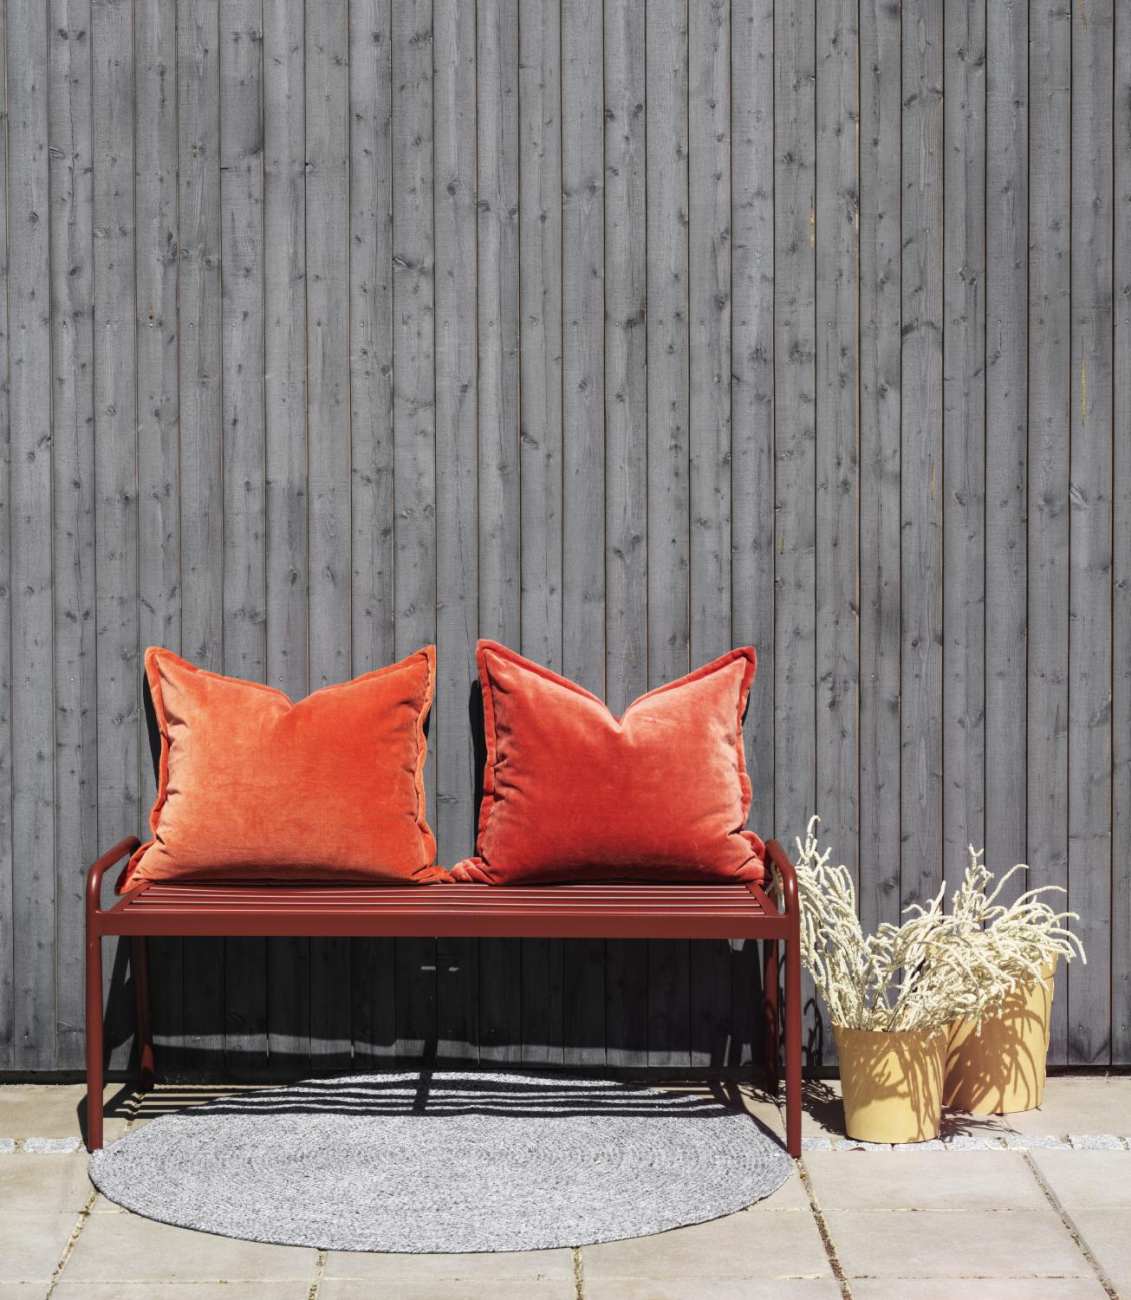 Die Gartenbank Sonnac überzeugt mit ihrem modernen Design. Gefertigt wurde sie aus Metall, welches einen roten Farbton besitzt. Das Gestell ist auch aus Metall. Die Sitzhöhe der Bank beträgt 43 cm.